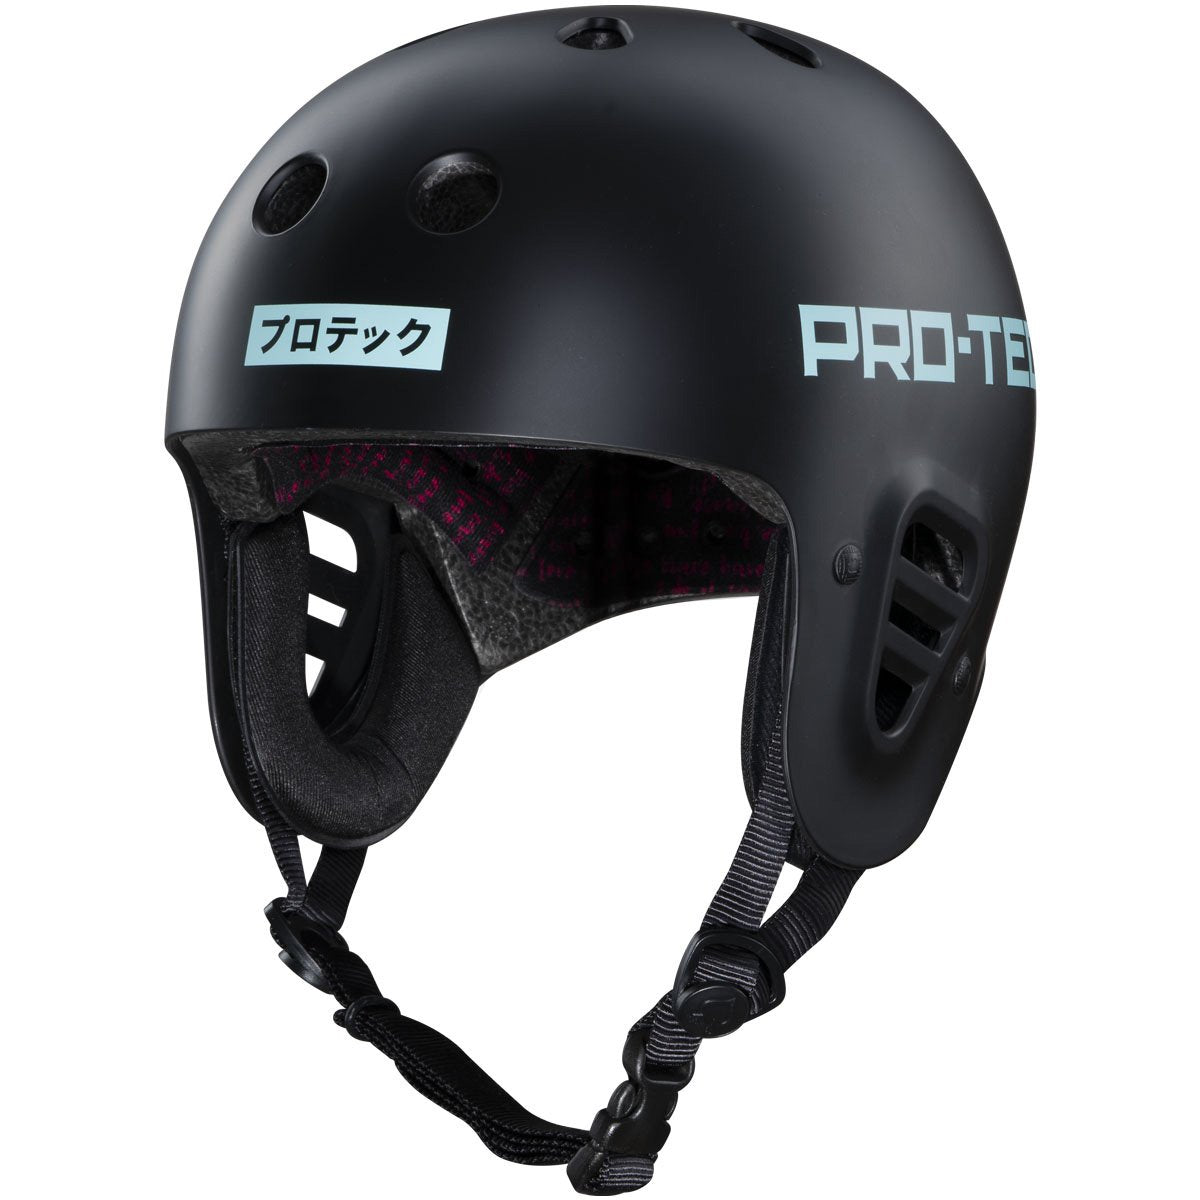 Pro-Tec Full Cut Certified Sky Brown Helmet - Black image 1